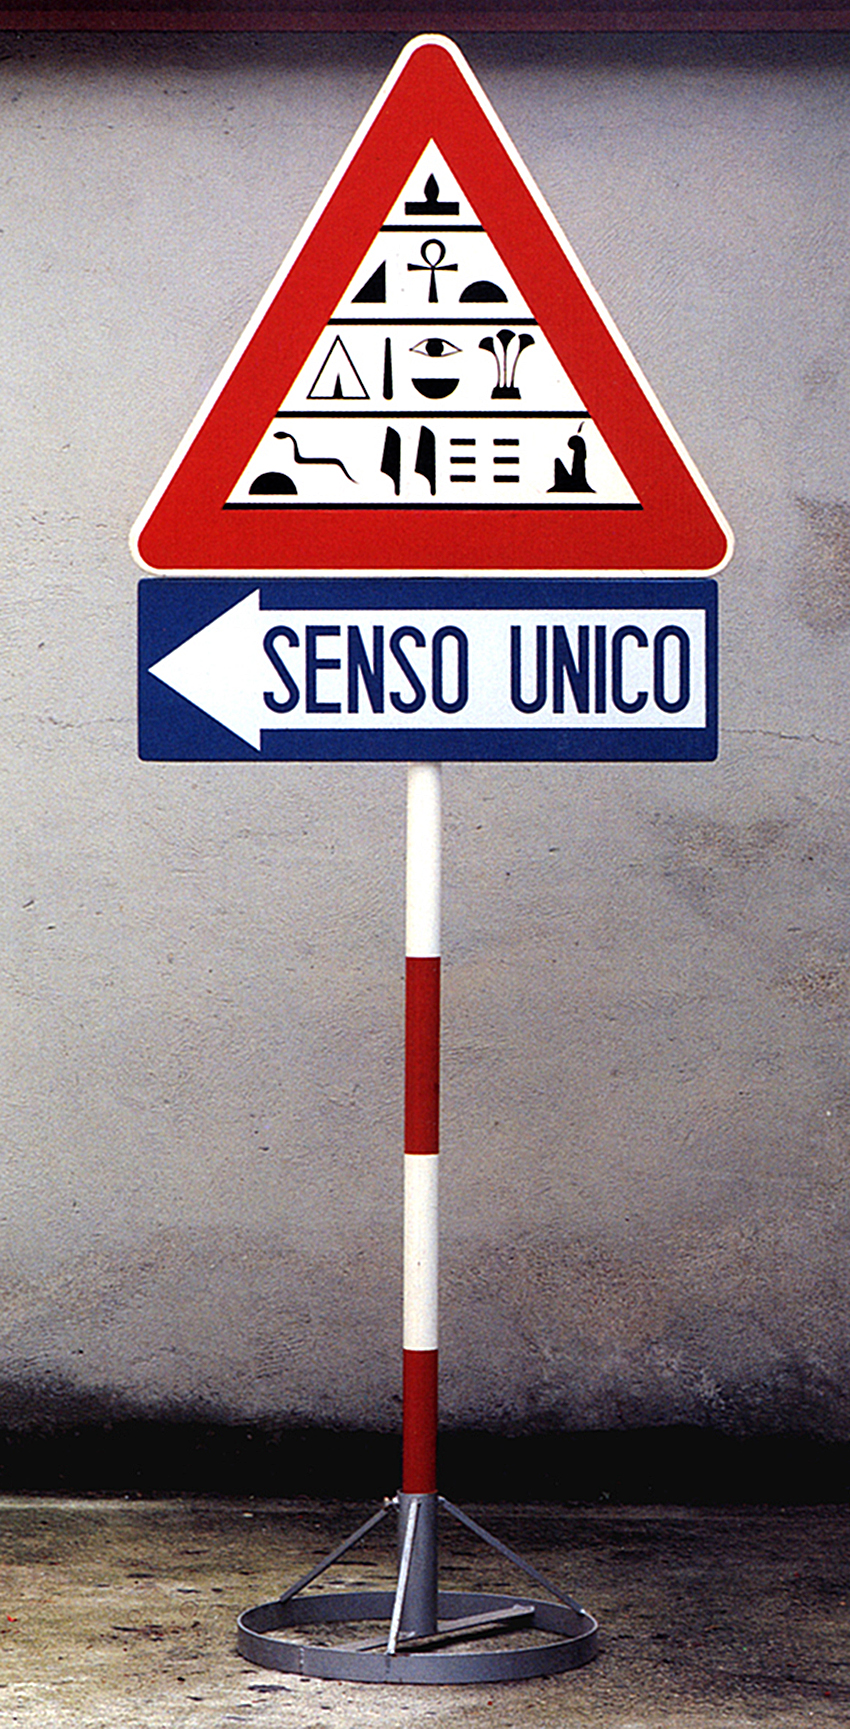 Francesco Garbelli, Senza titolo, 1989, vernice spray, cartello segnaletica stradale, palo e sostegno circolare in ferro zincato, 210x82x50 cm